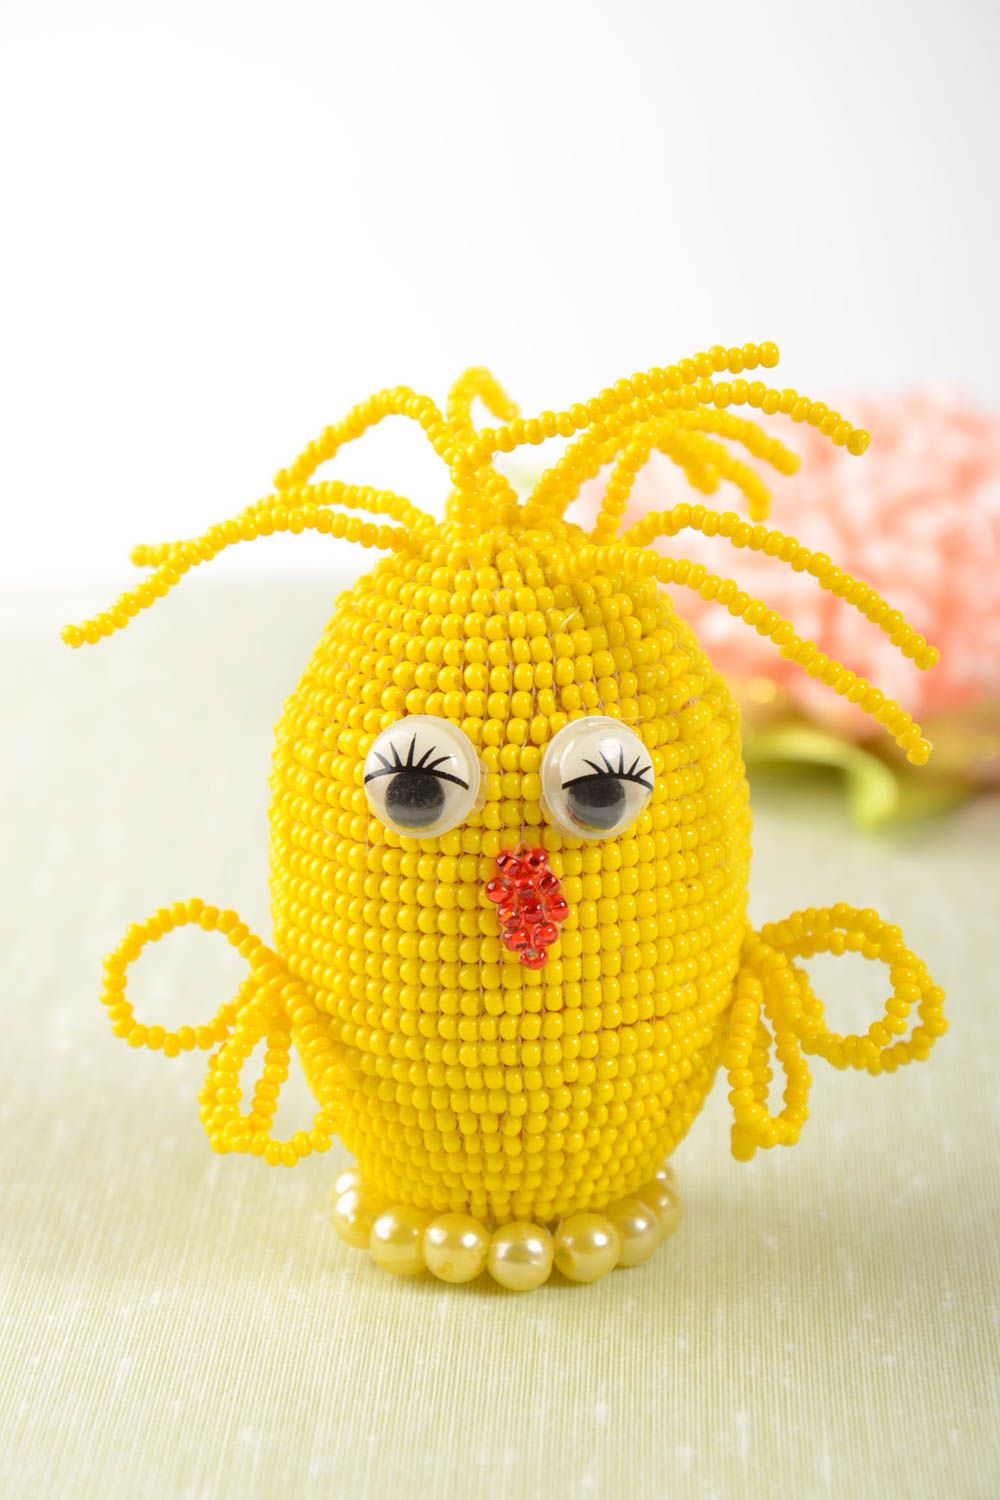 Декоративное яйцо из бисера в виде цыпленка желтое яркое небольшое ручной работы фото 1